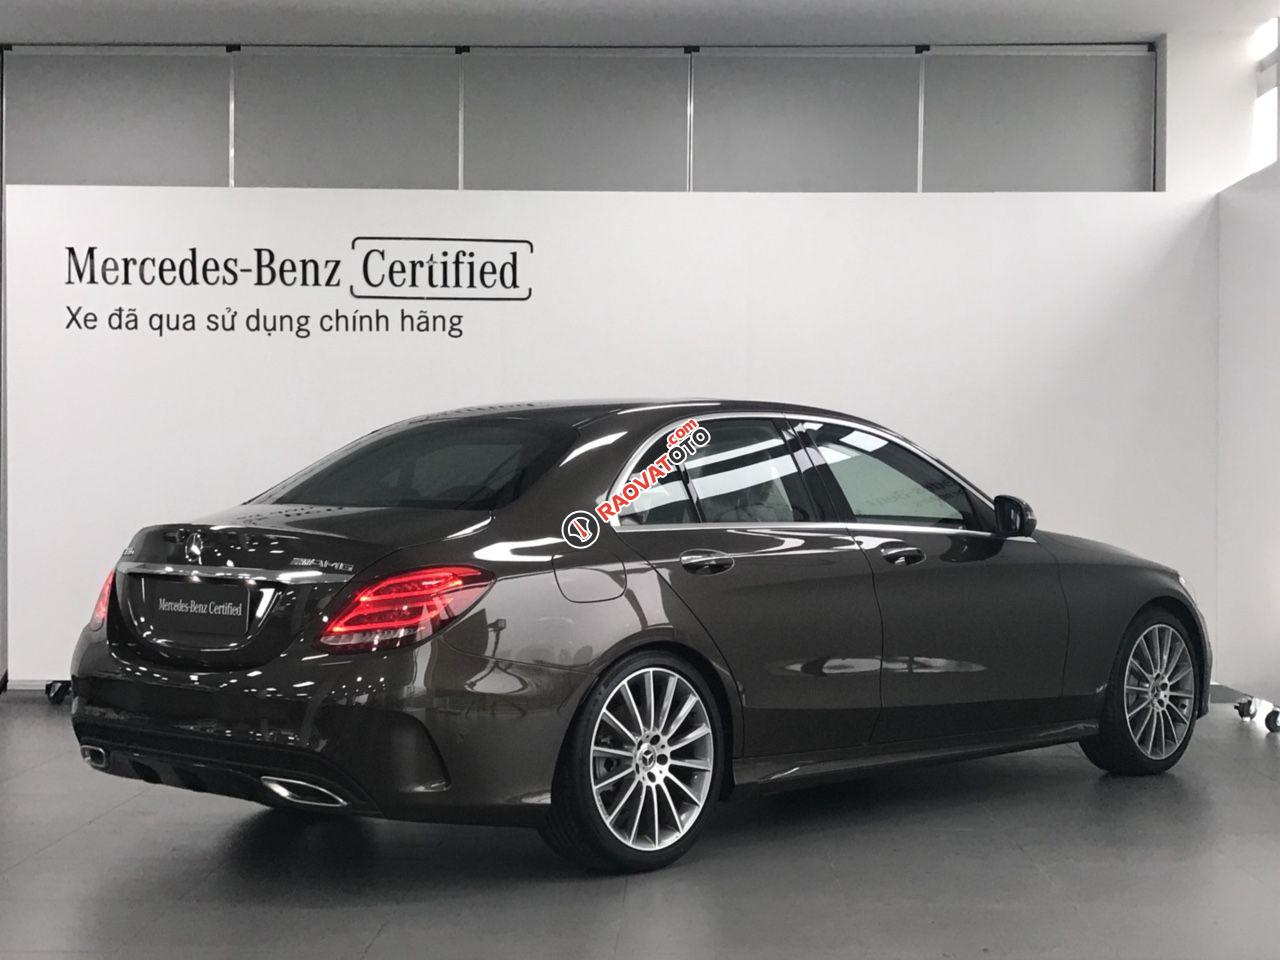 Bán Mercedes-Benz C300 2017 AMG chính hãng, màu nâu/nội thất đen. Xe lướt 17.000 km-5